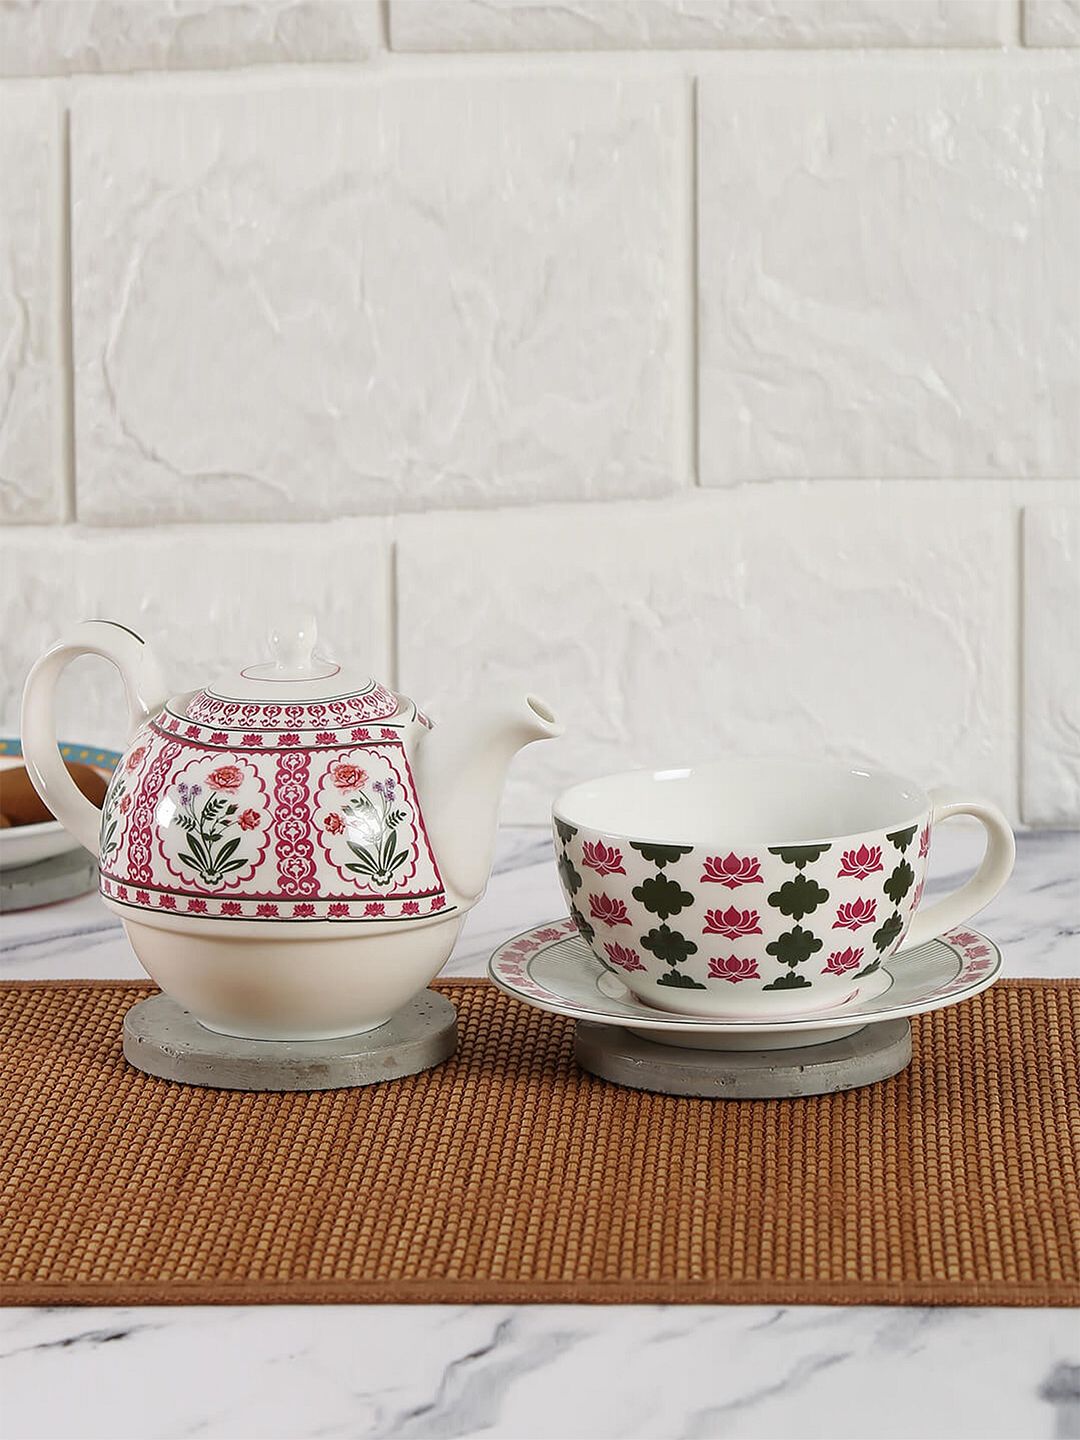 India Circus Ethnic Motifs Printed Ceramic Tea Set For One Price in India